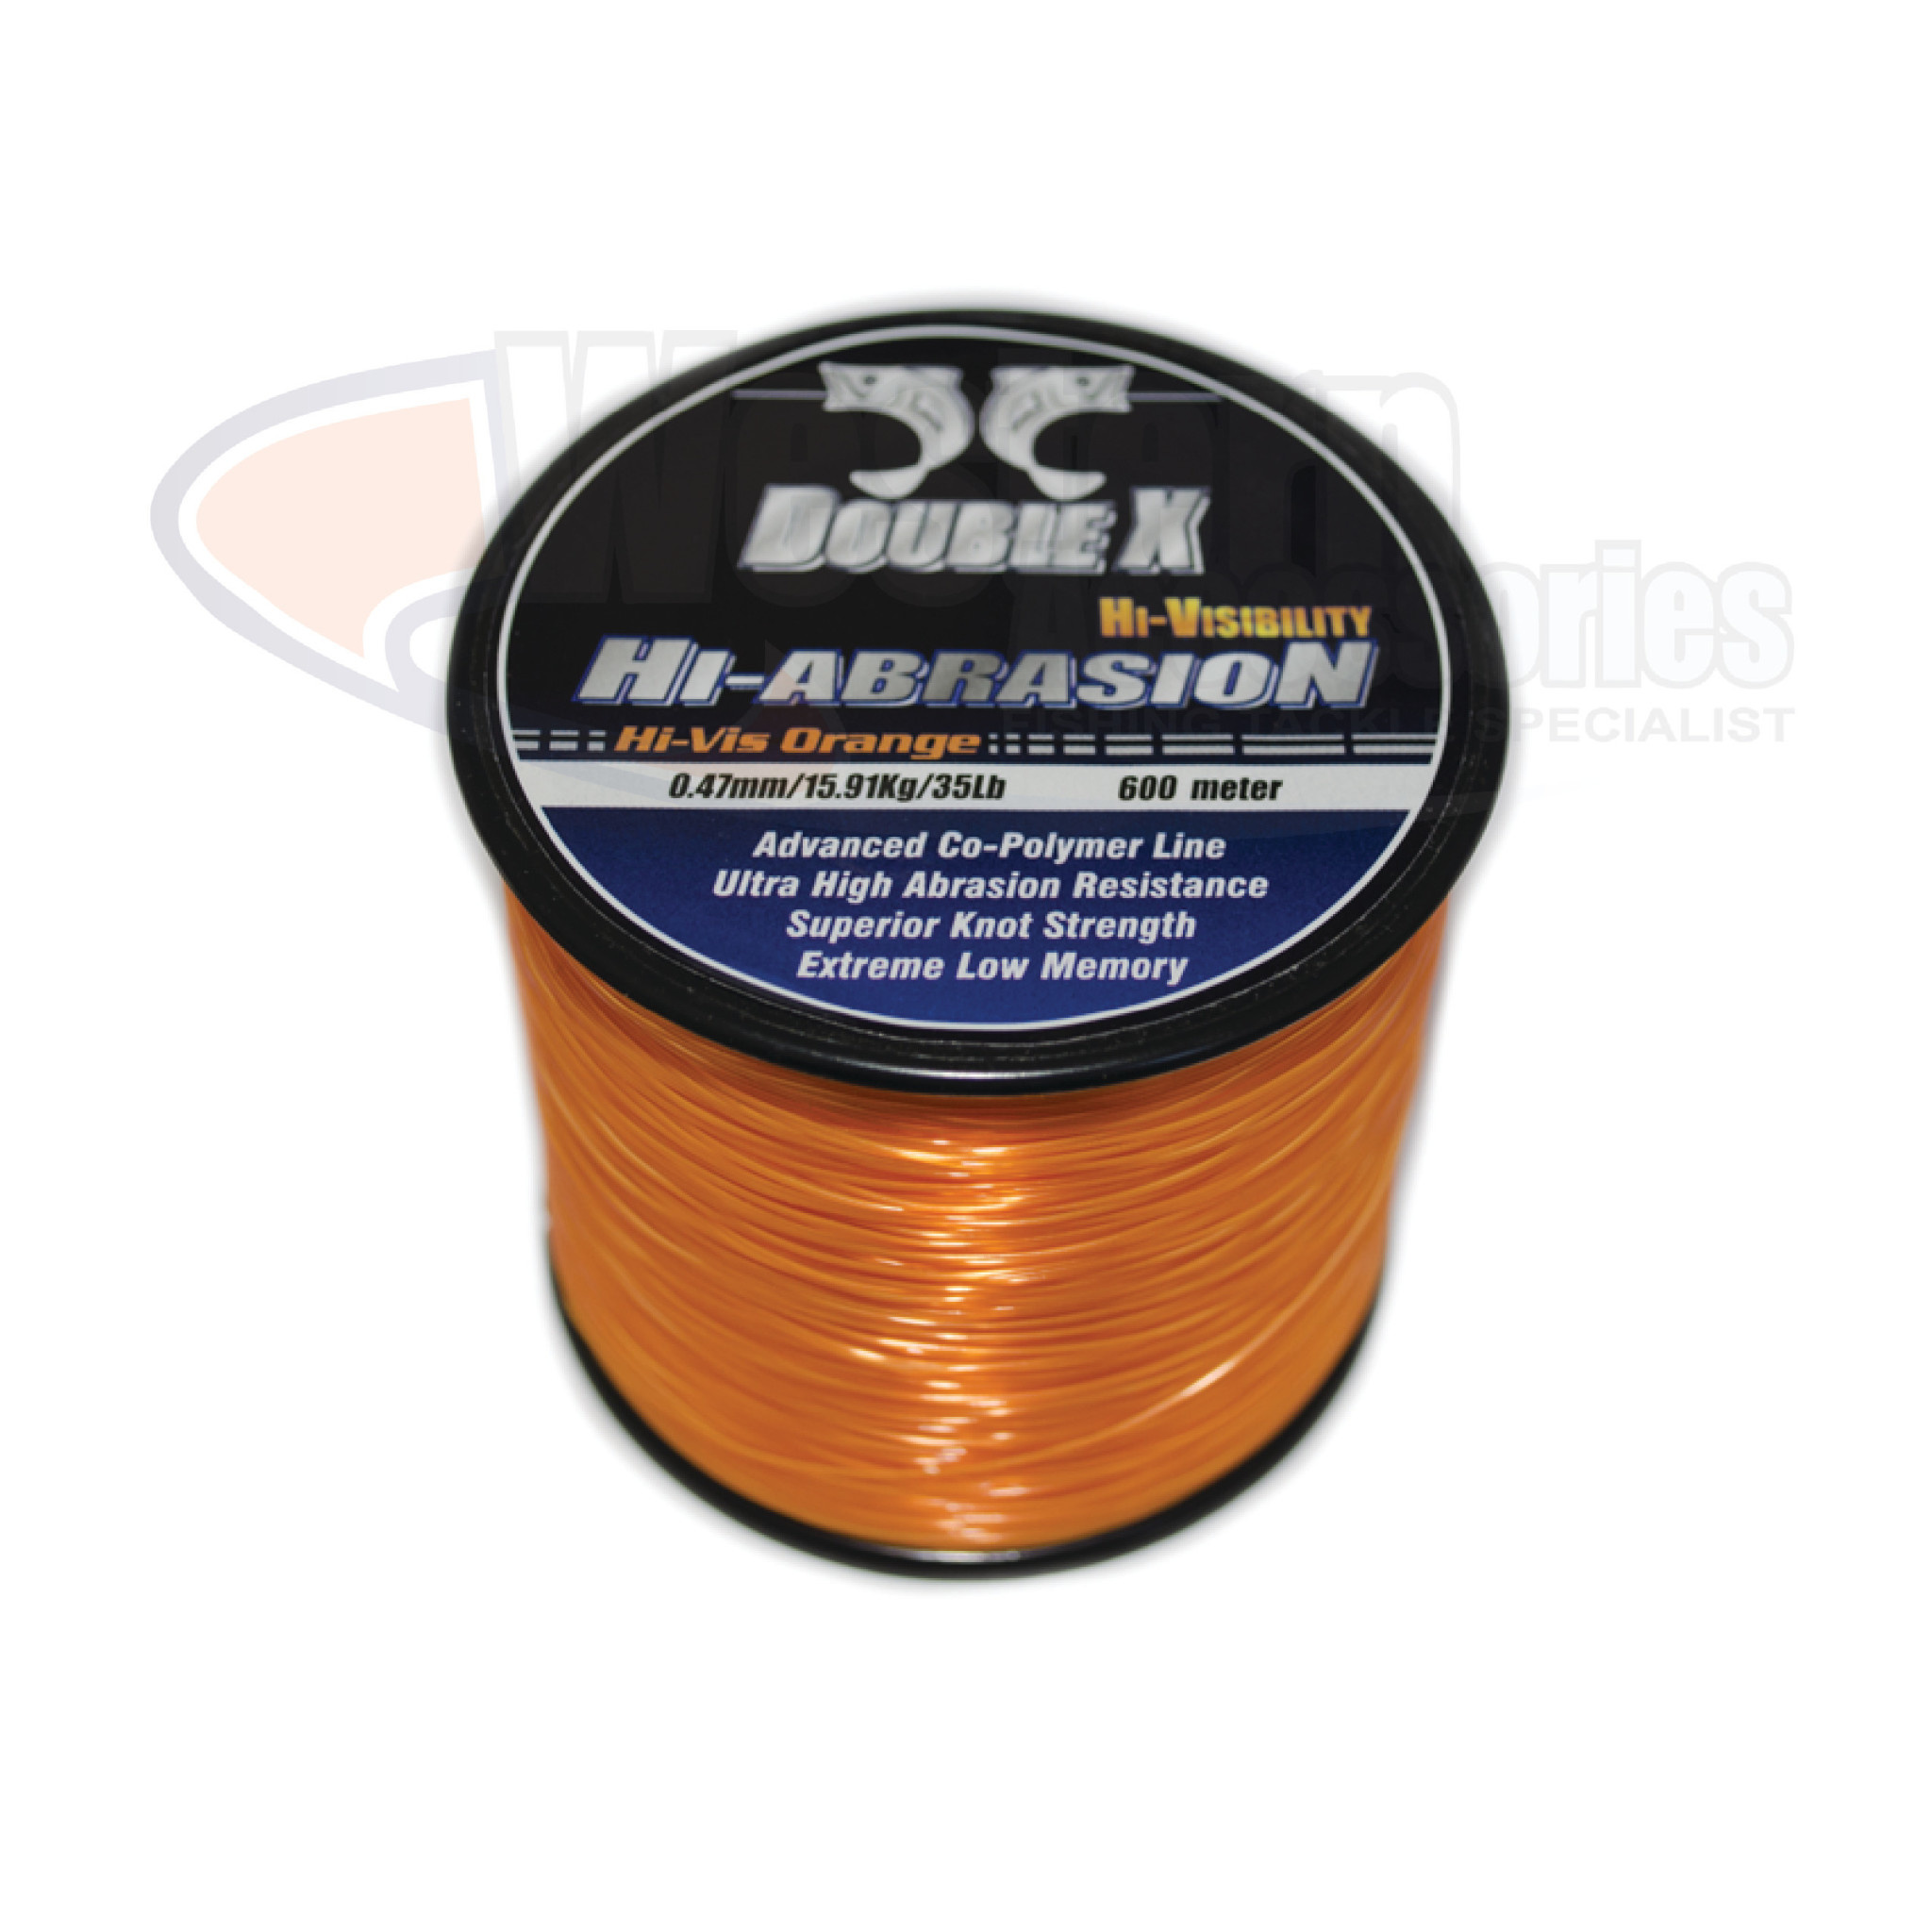 Double X Hi-Abrasion Orange 600m 10lb - Western Accessories